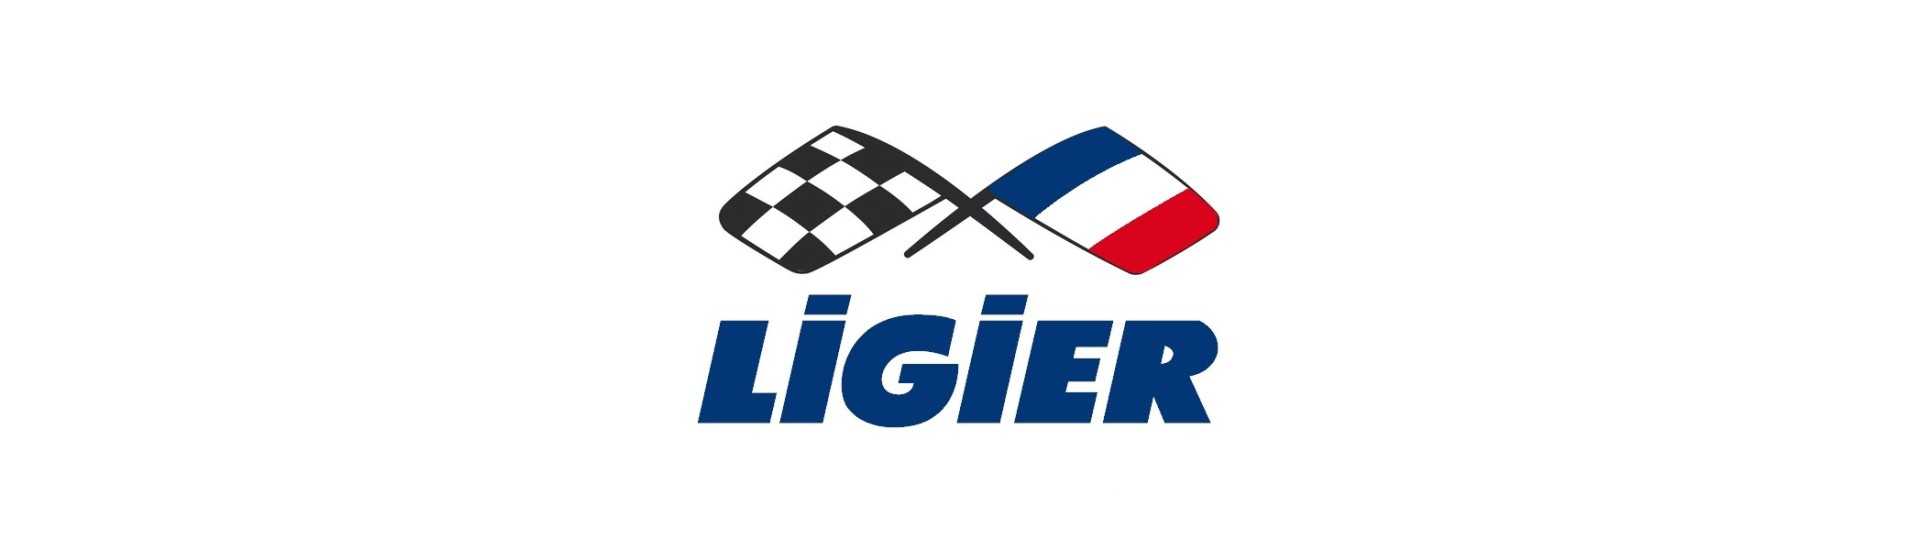 Silent radiator bloque al mejor precio coche sin permiso Ligier